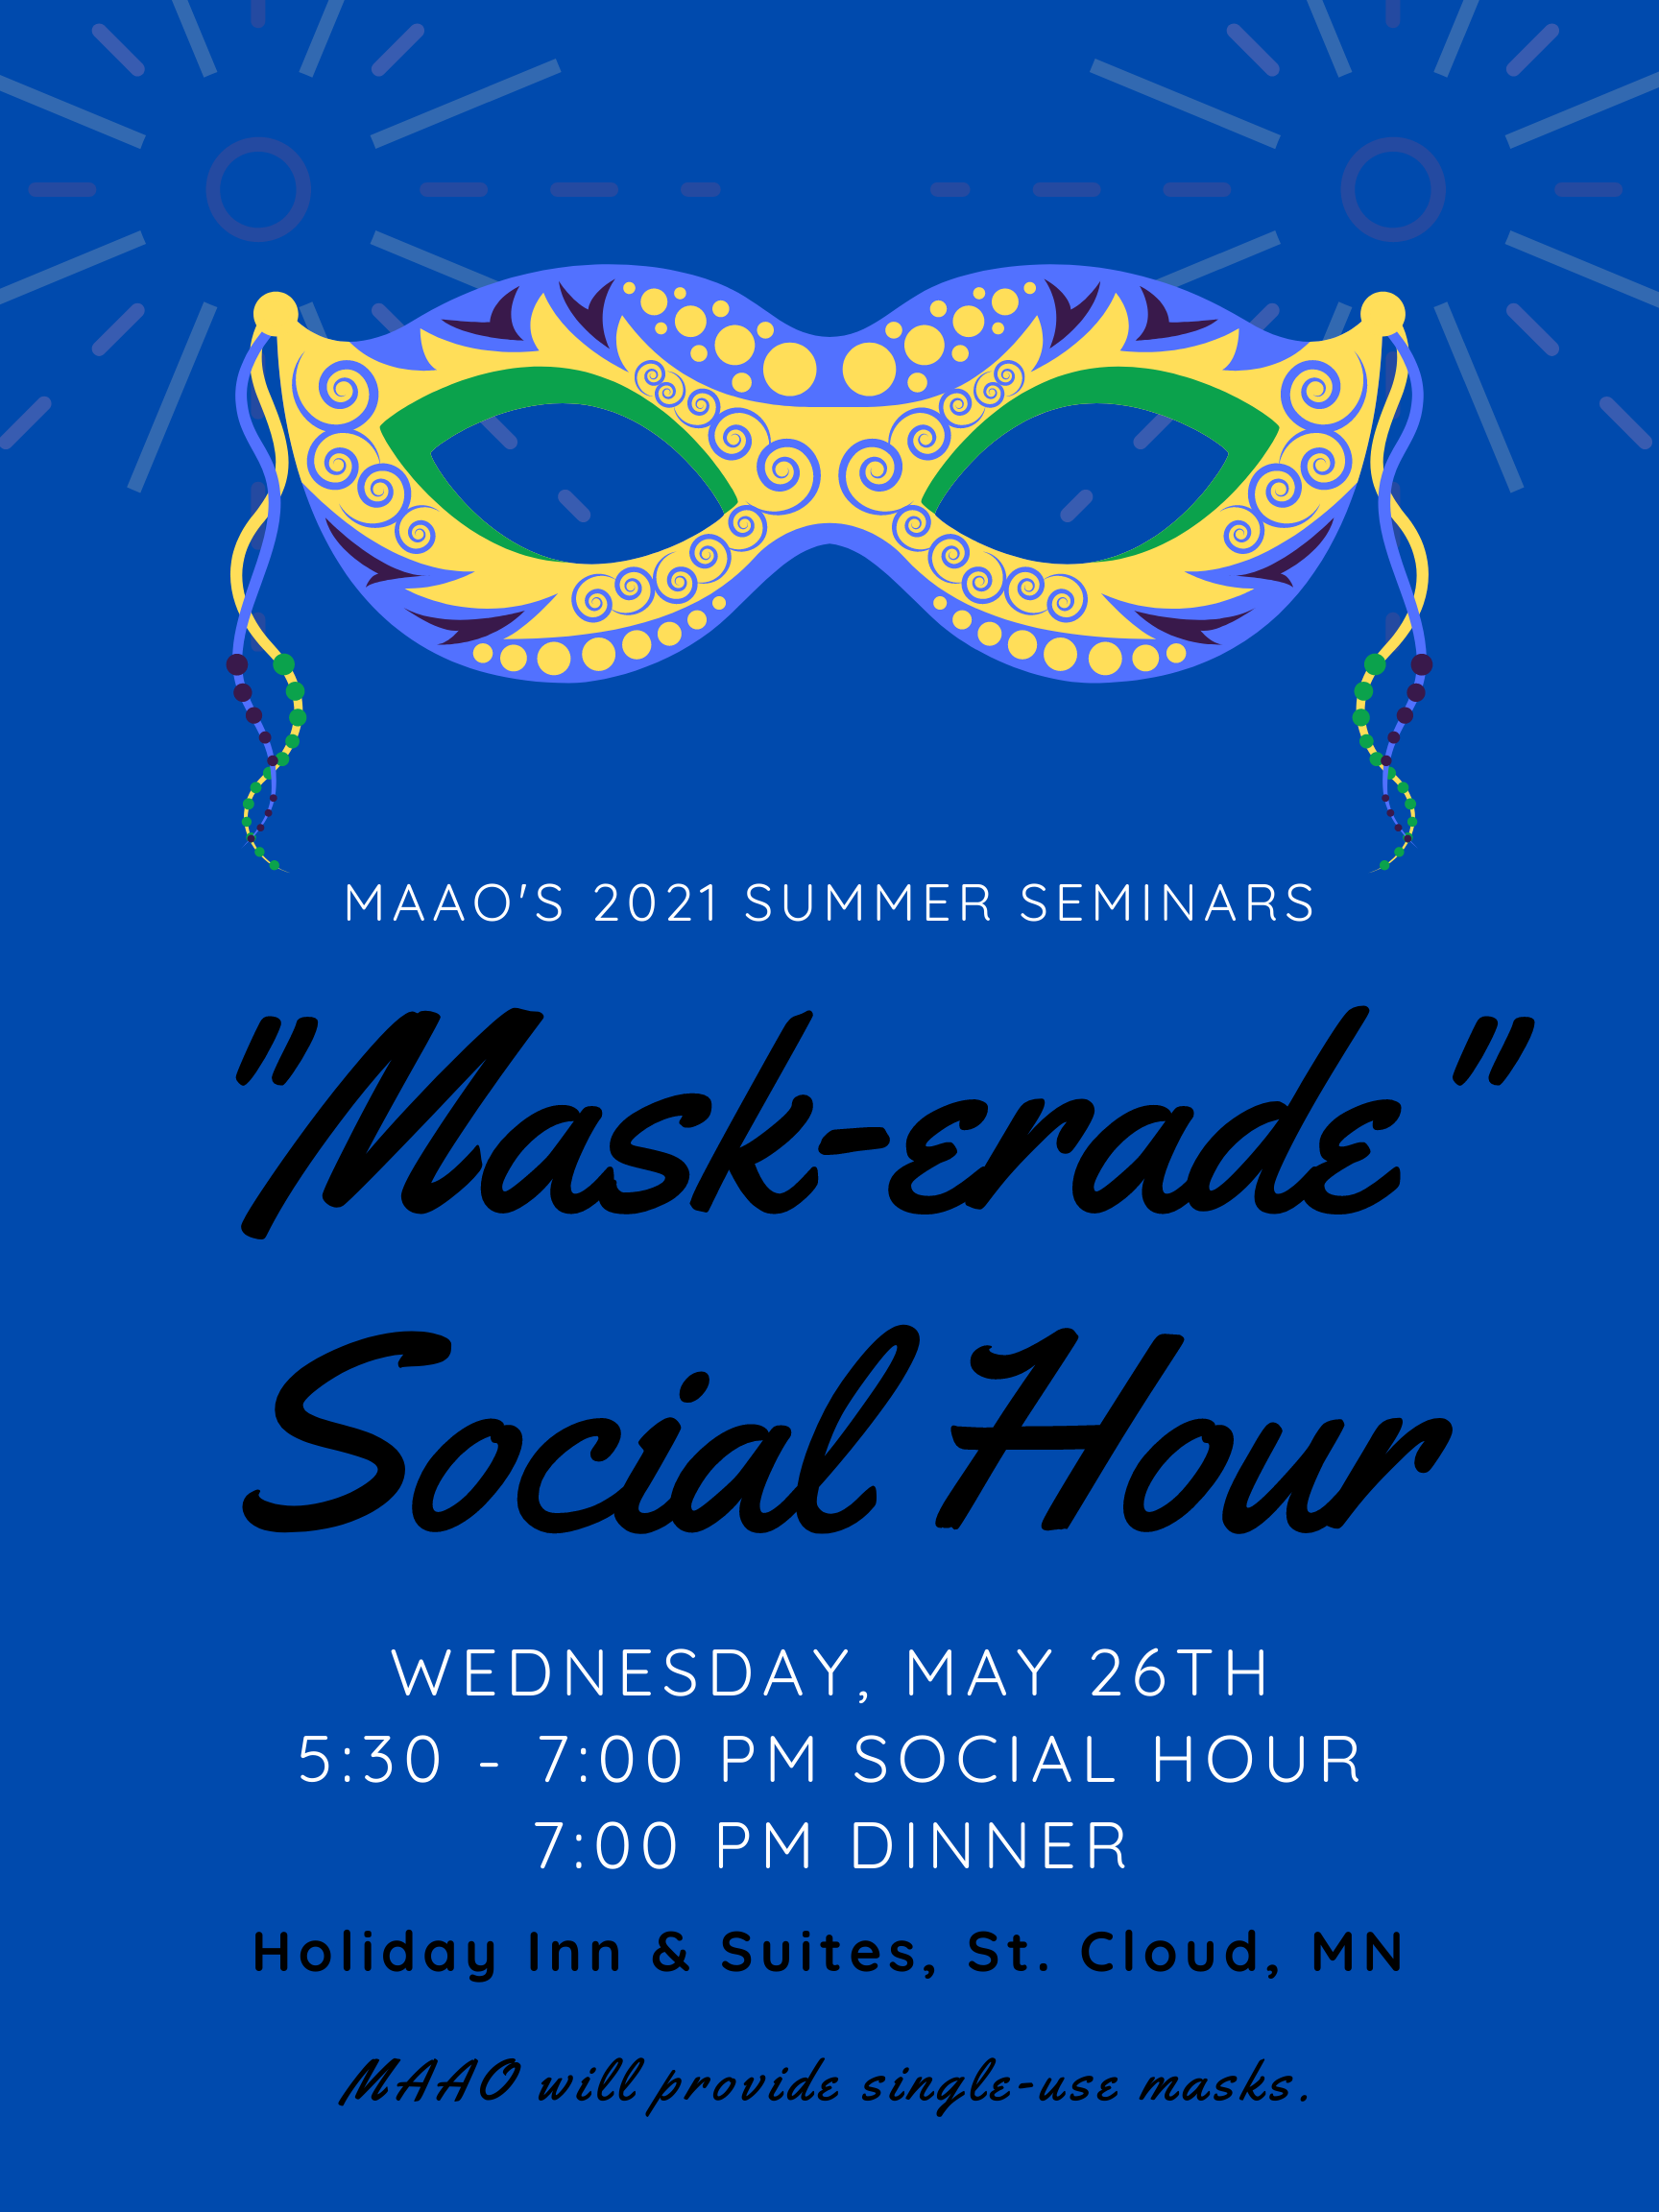 Mask-erade social hour